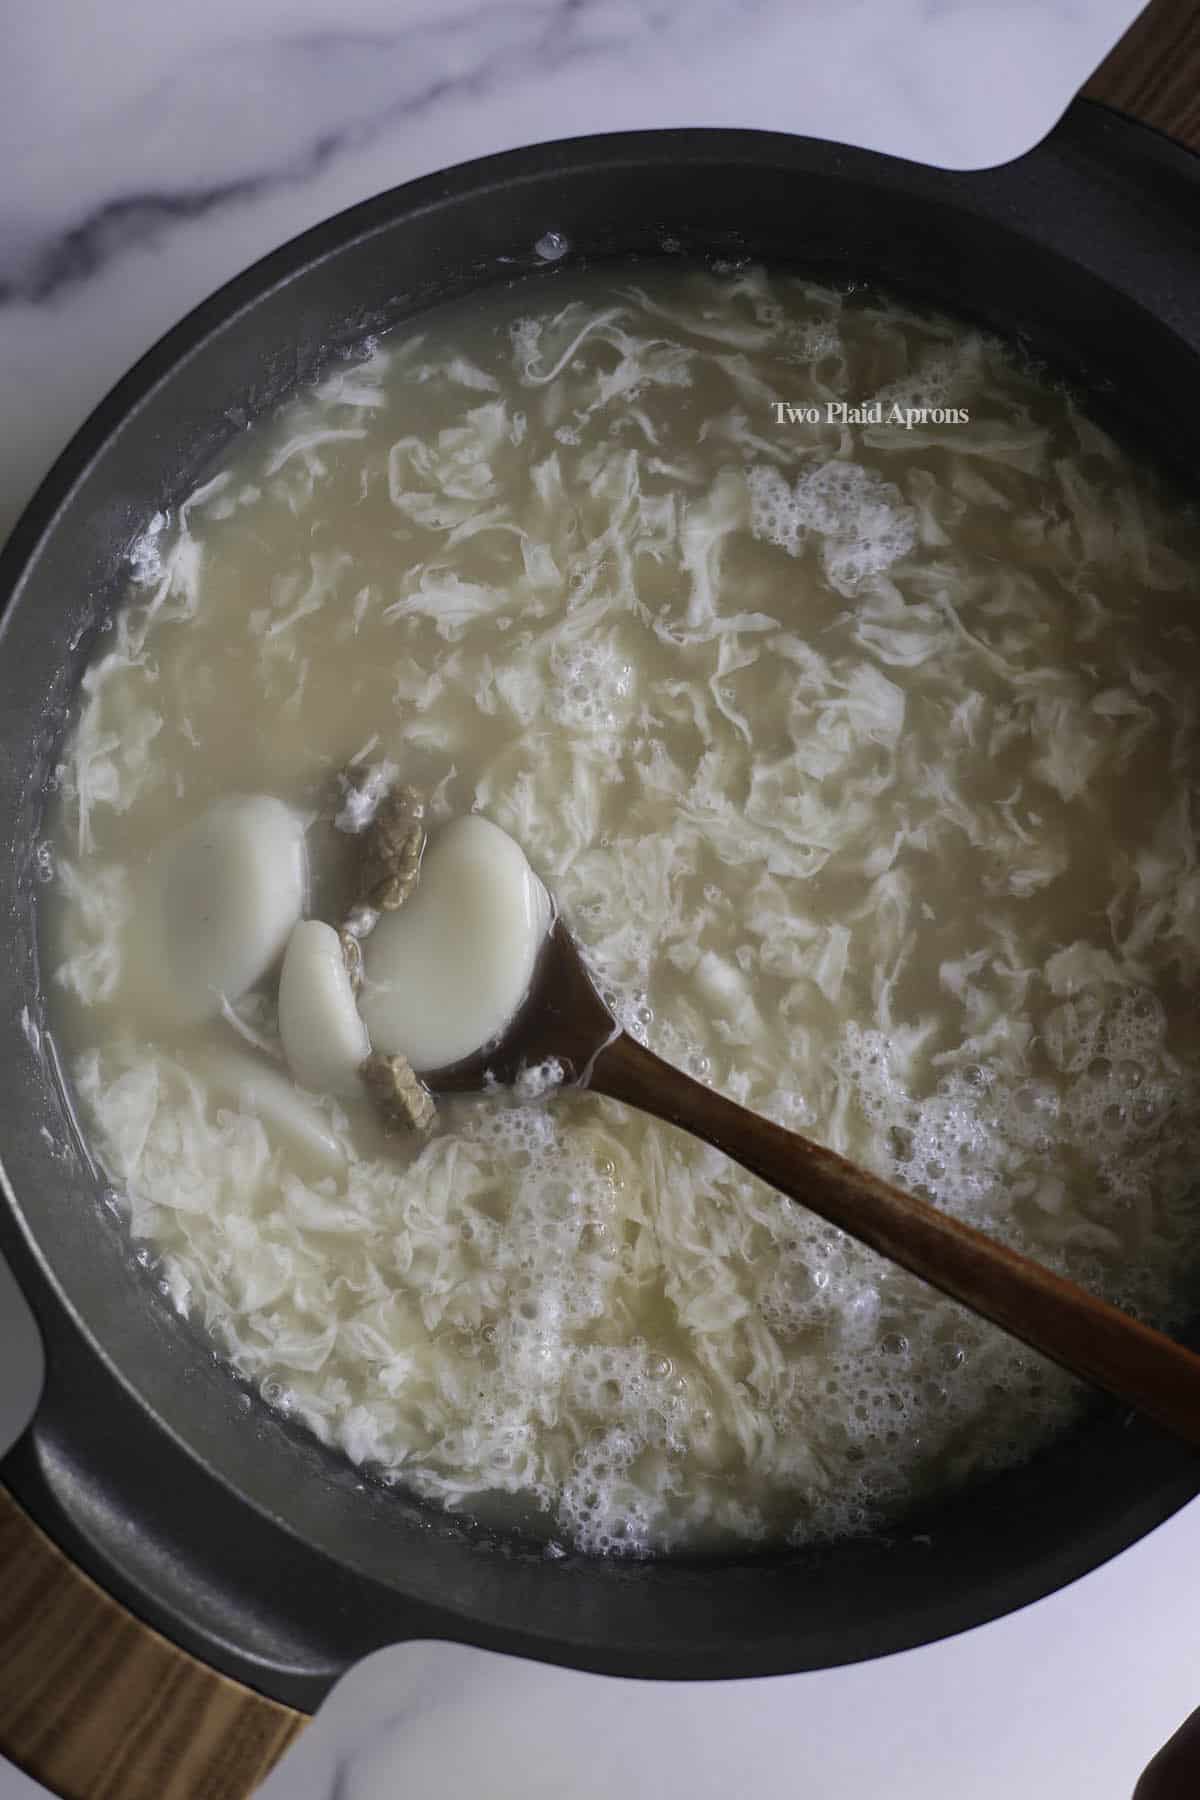 Dduk guk after adding egg whites into soup.